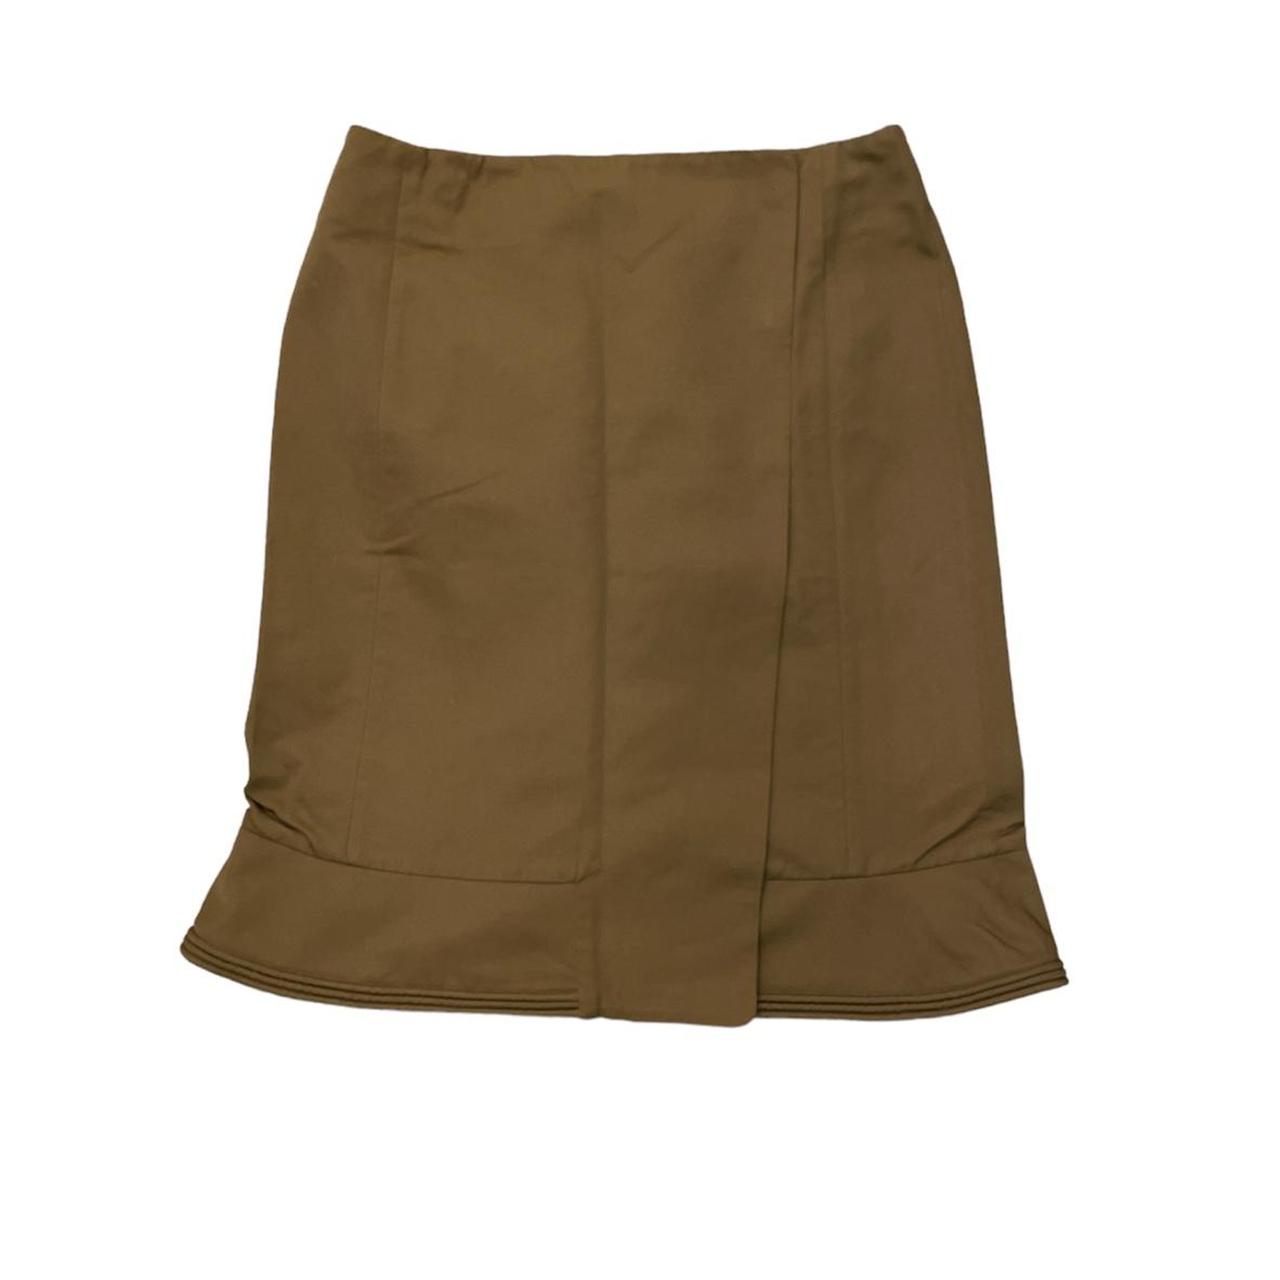 Marni Women's Brown Skirt